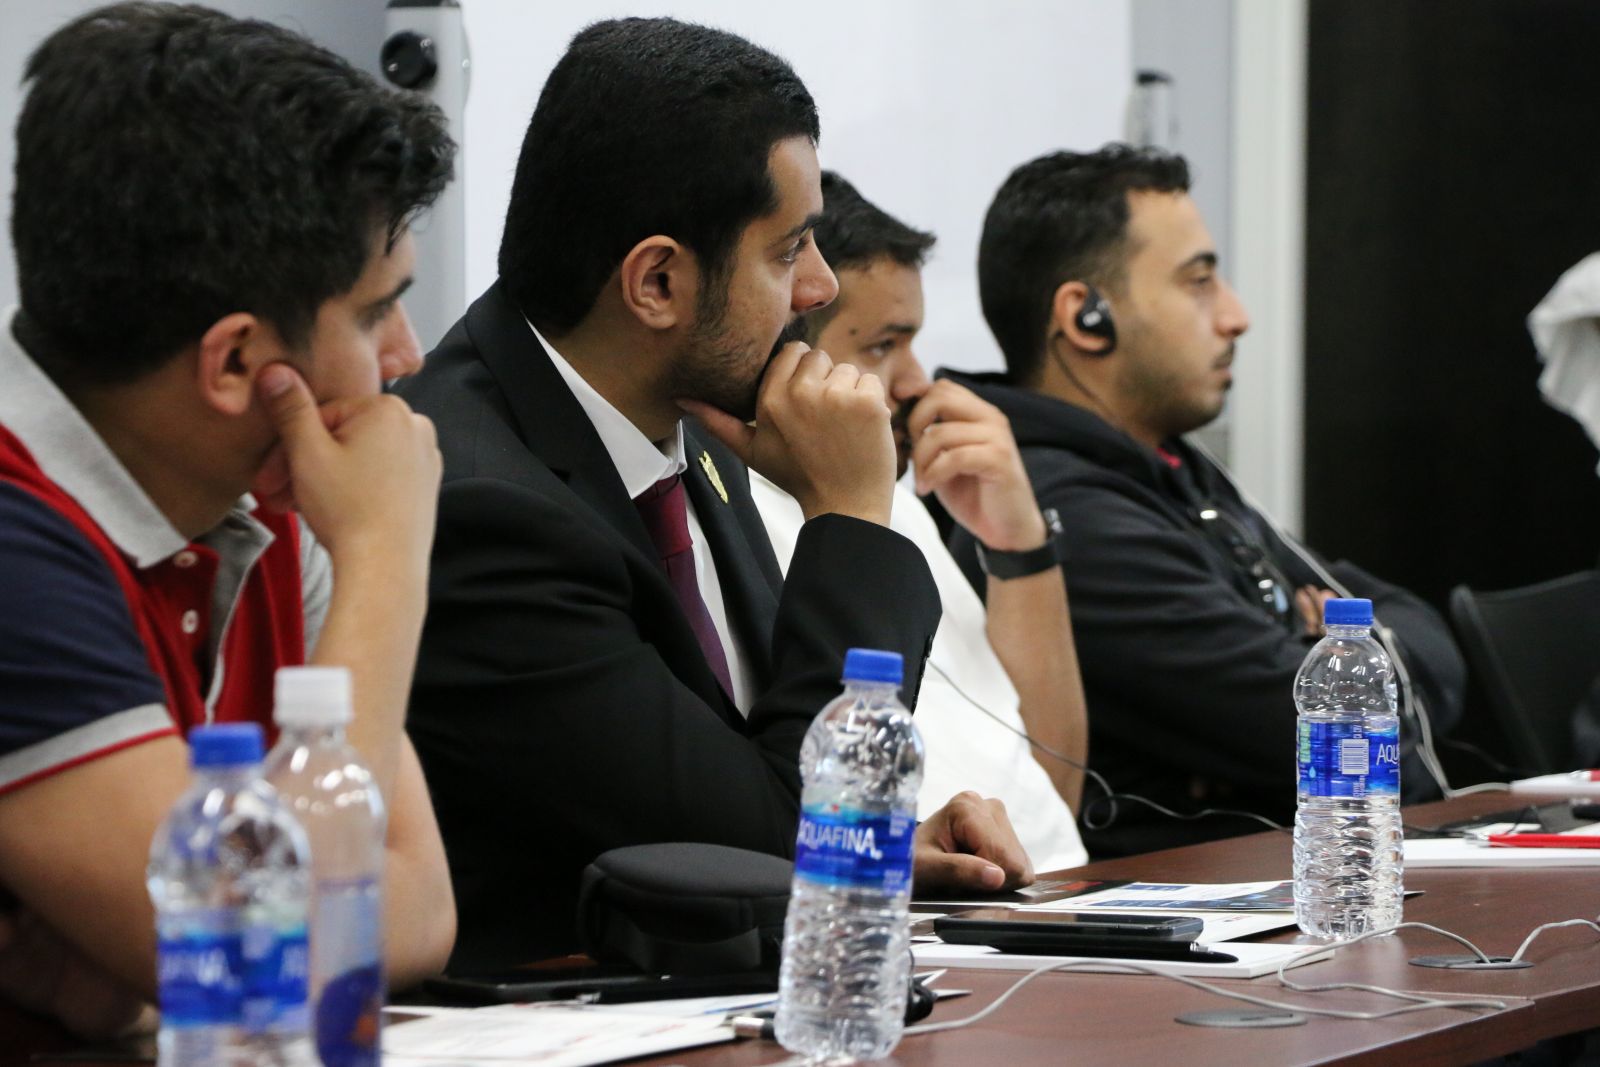 IVLP participants watch a lecture